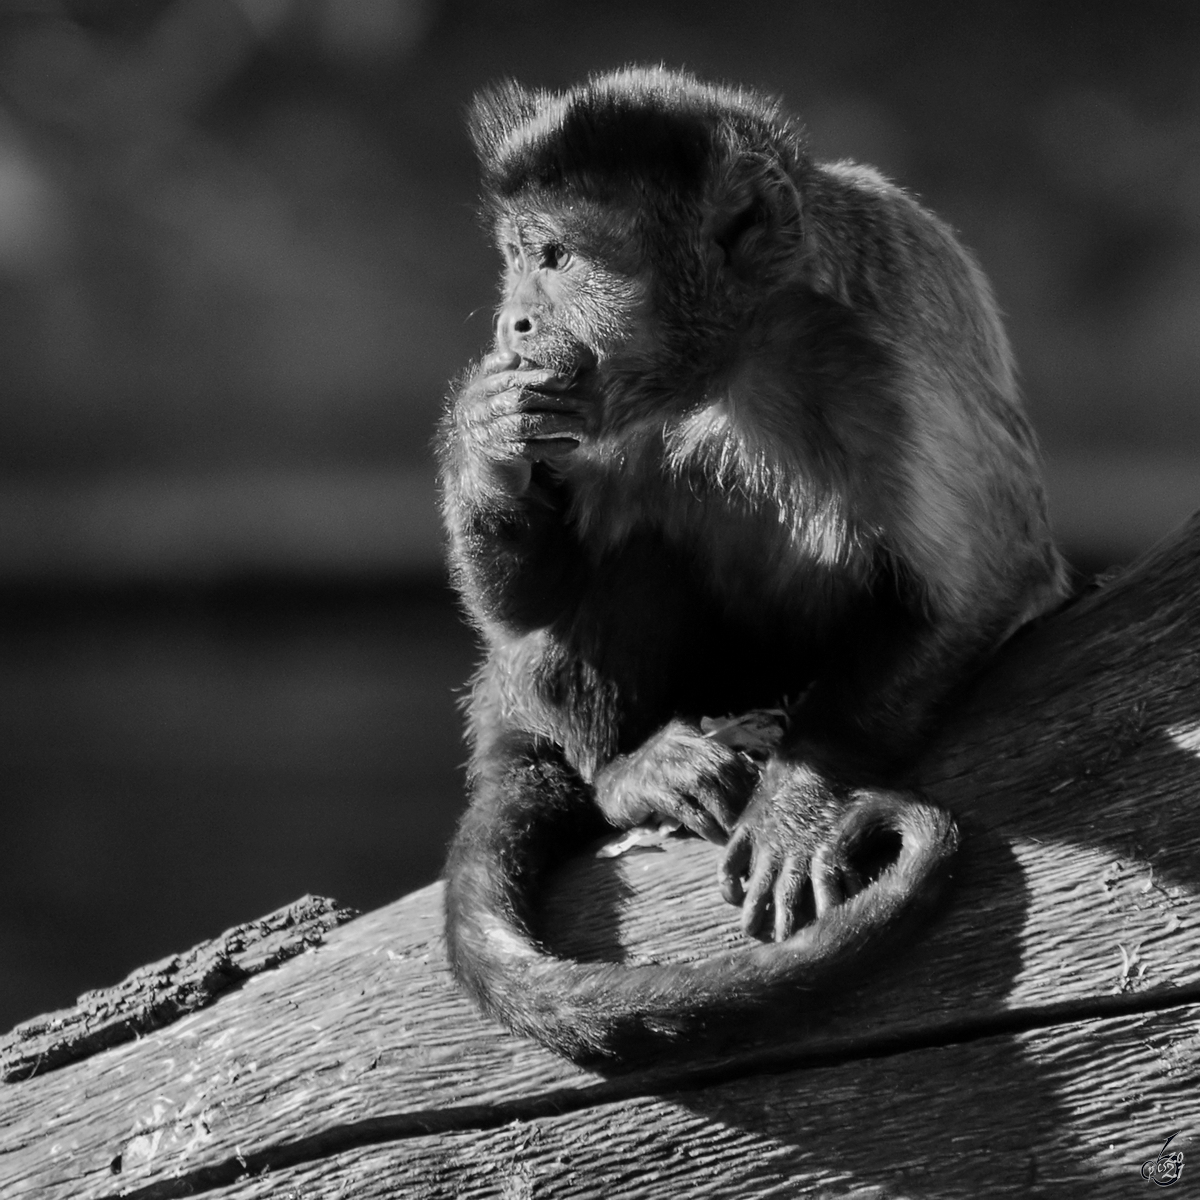 Der (Nach)denker, ein Kapuzinerffchen in intellektueller Pose. (Zoo Madrid, Dezember 2010)
